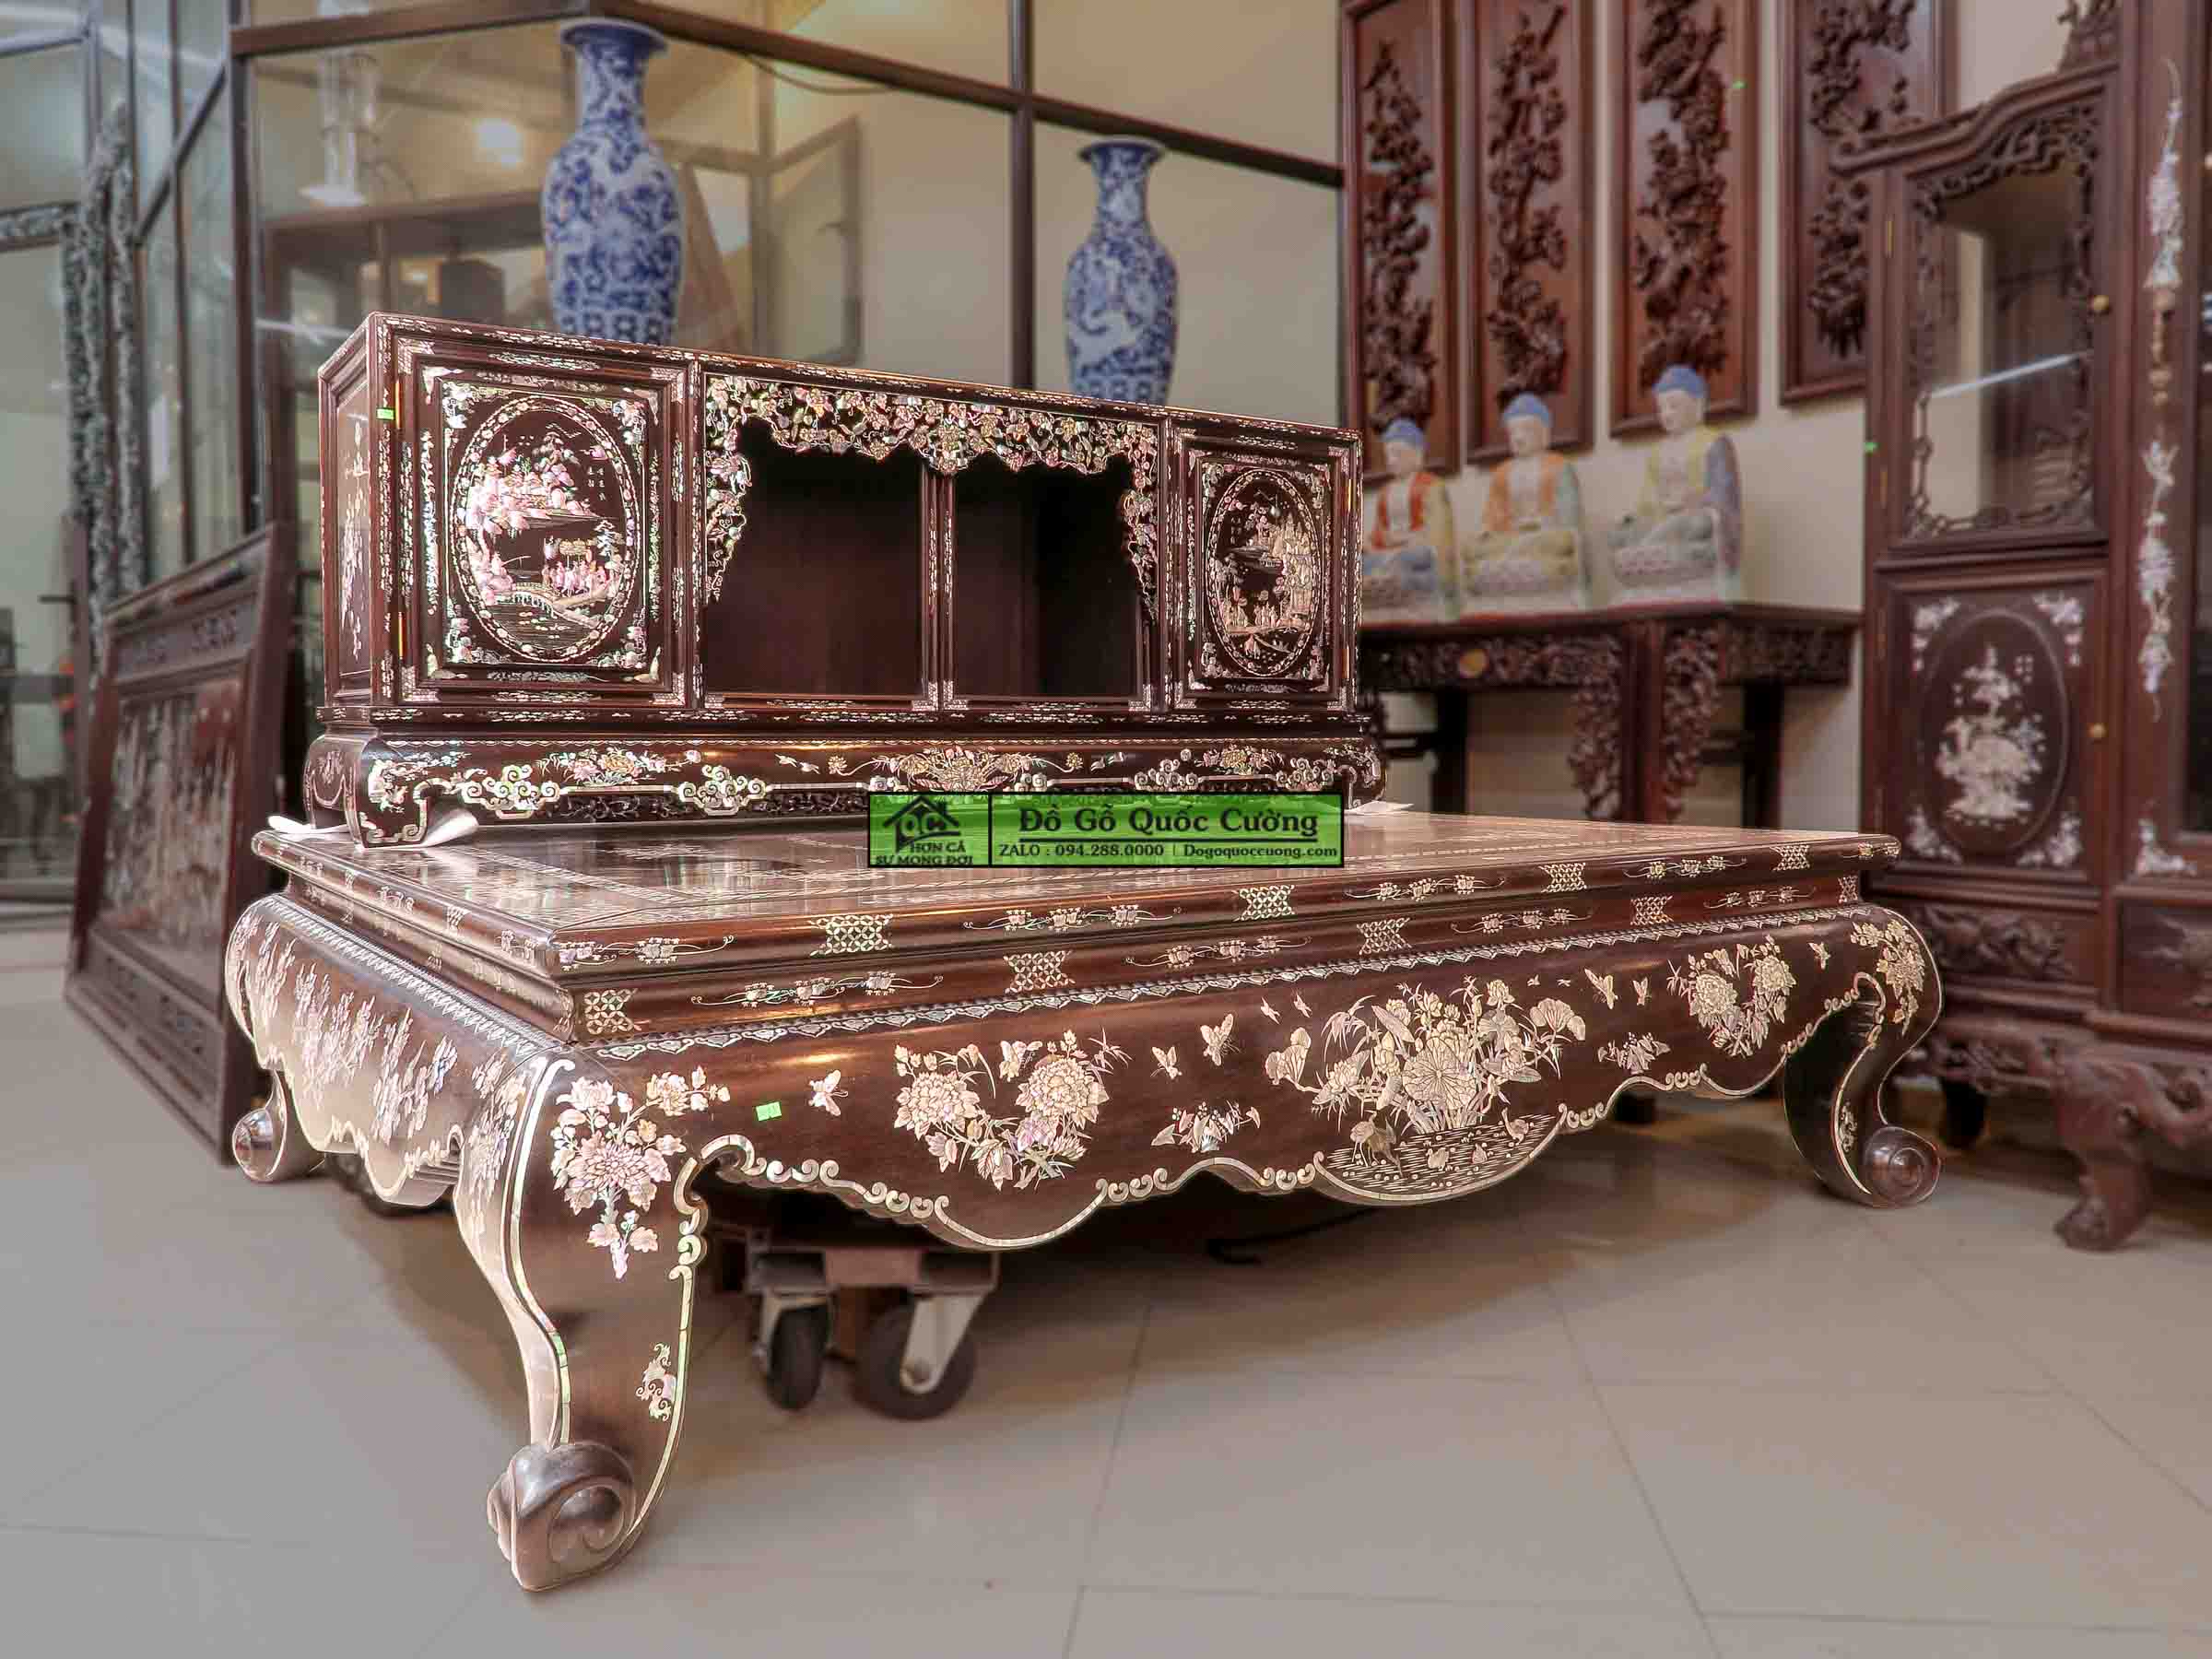 Sập gụ tủ chè gỗ gụ khảm liên chi - Bảo Áp Xuyên Liên - Hàng cao cấp đang được trưng bày tại Dogoquoccuong